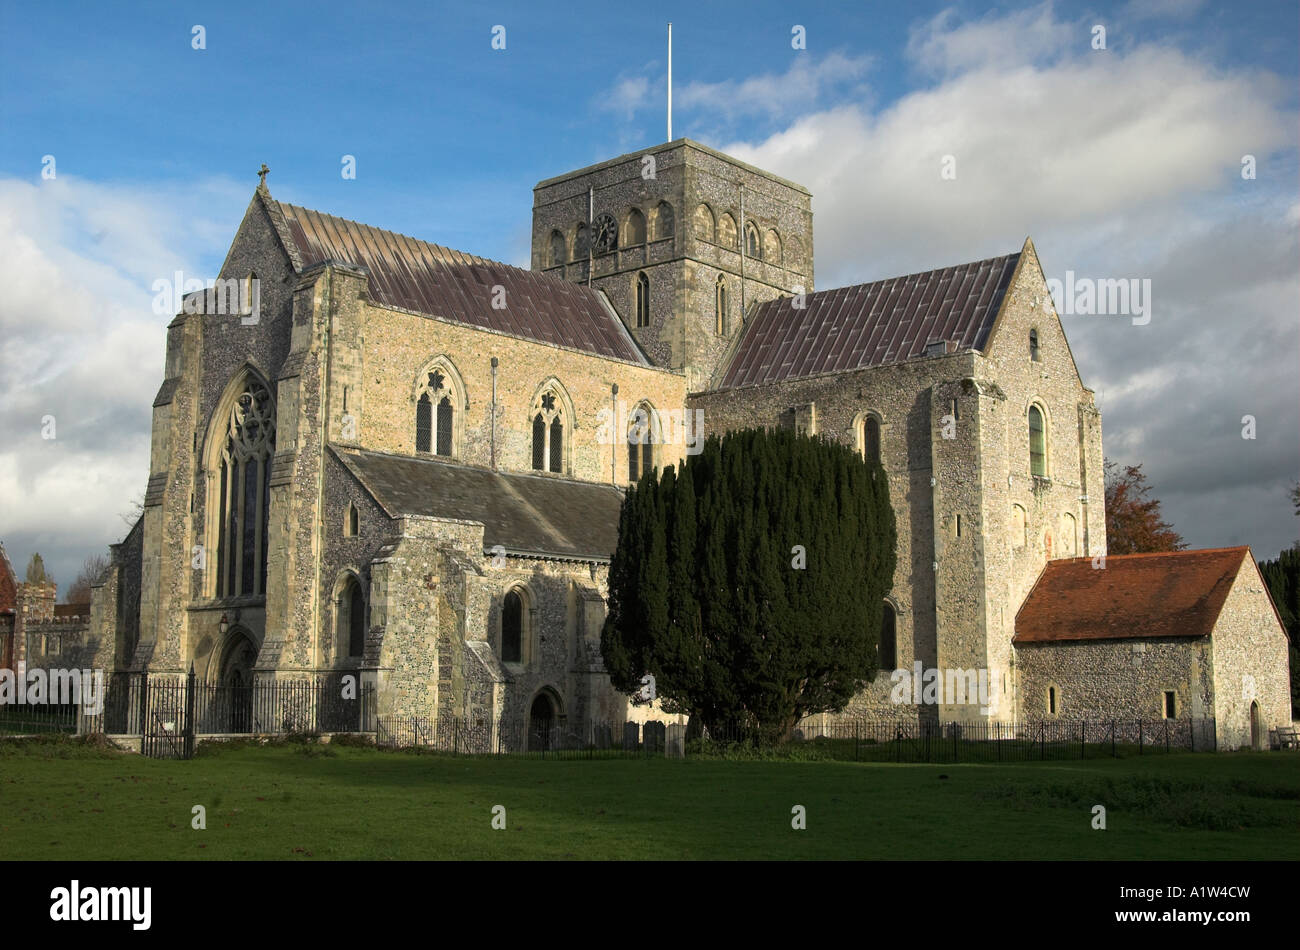 L'Abbaye de St Croix, Winchester, Hampshire, Angleterre montrant l'église et arbres d'automne en fin d'après-midi du soleil. Banque D'Images